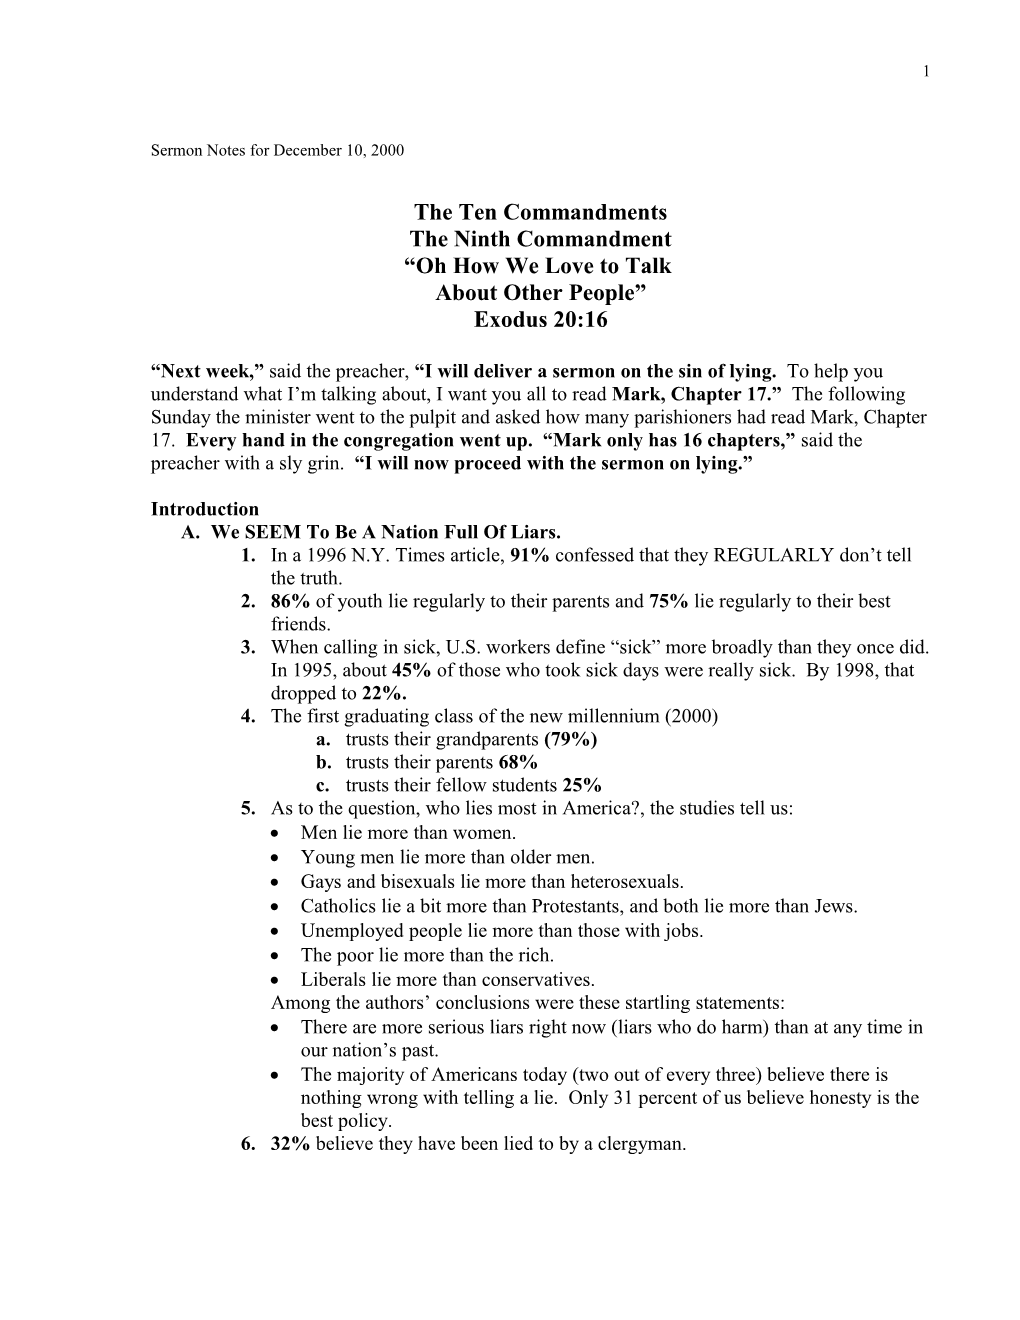 Sermon Notes for December 10, 2000